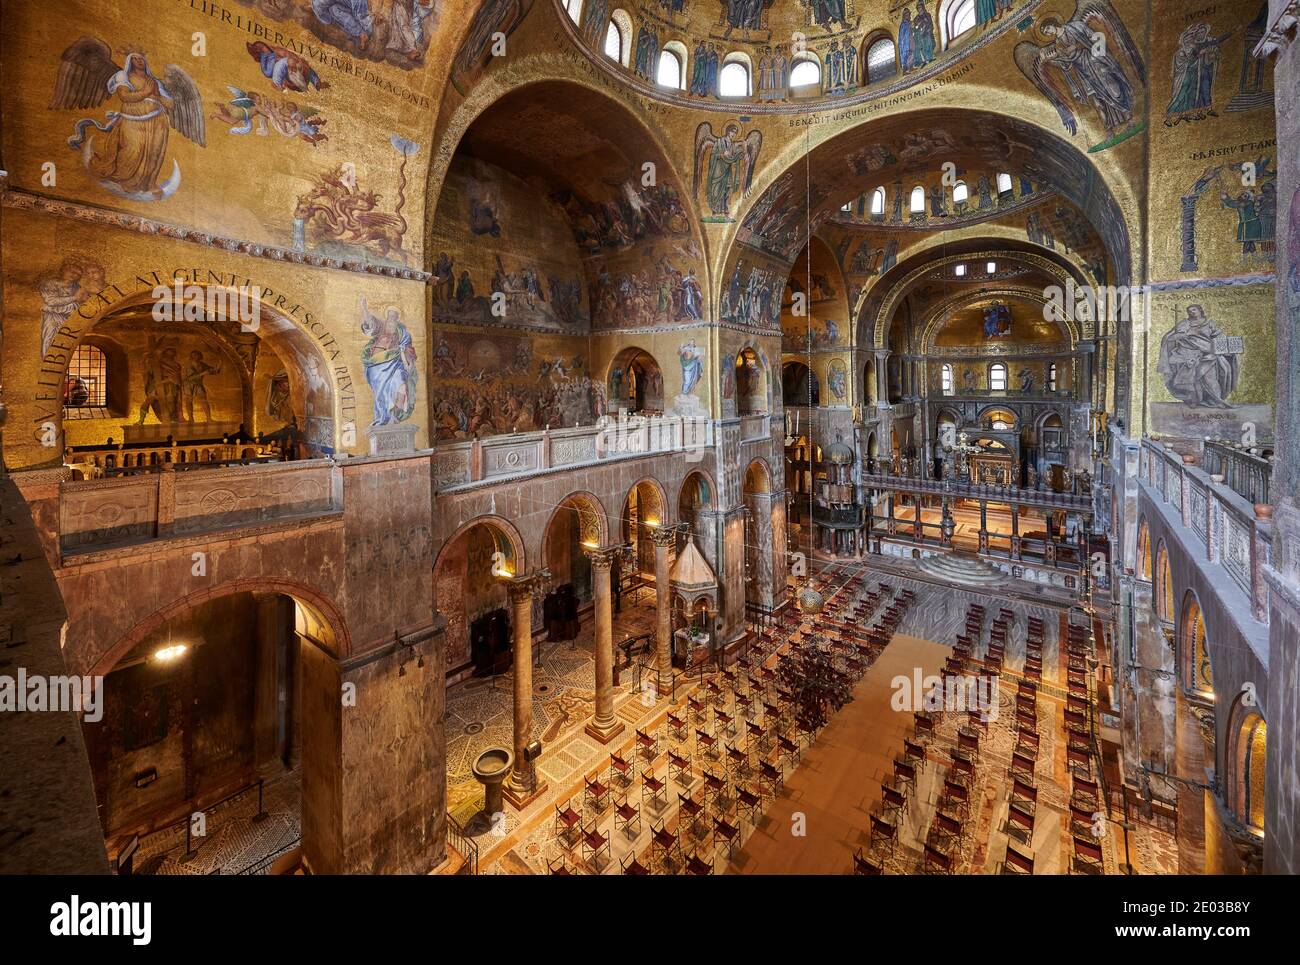 Splendidi mosaici dorati all'interno della Basilica di San Marco, interni dalla galleria sopra l'ingresso principale, Venezia, Veneto, Italia Foto Stock